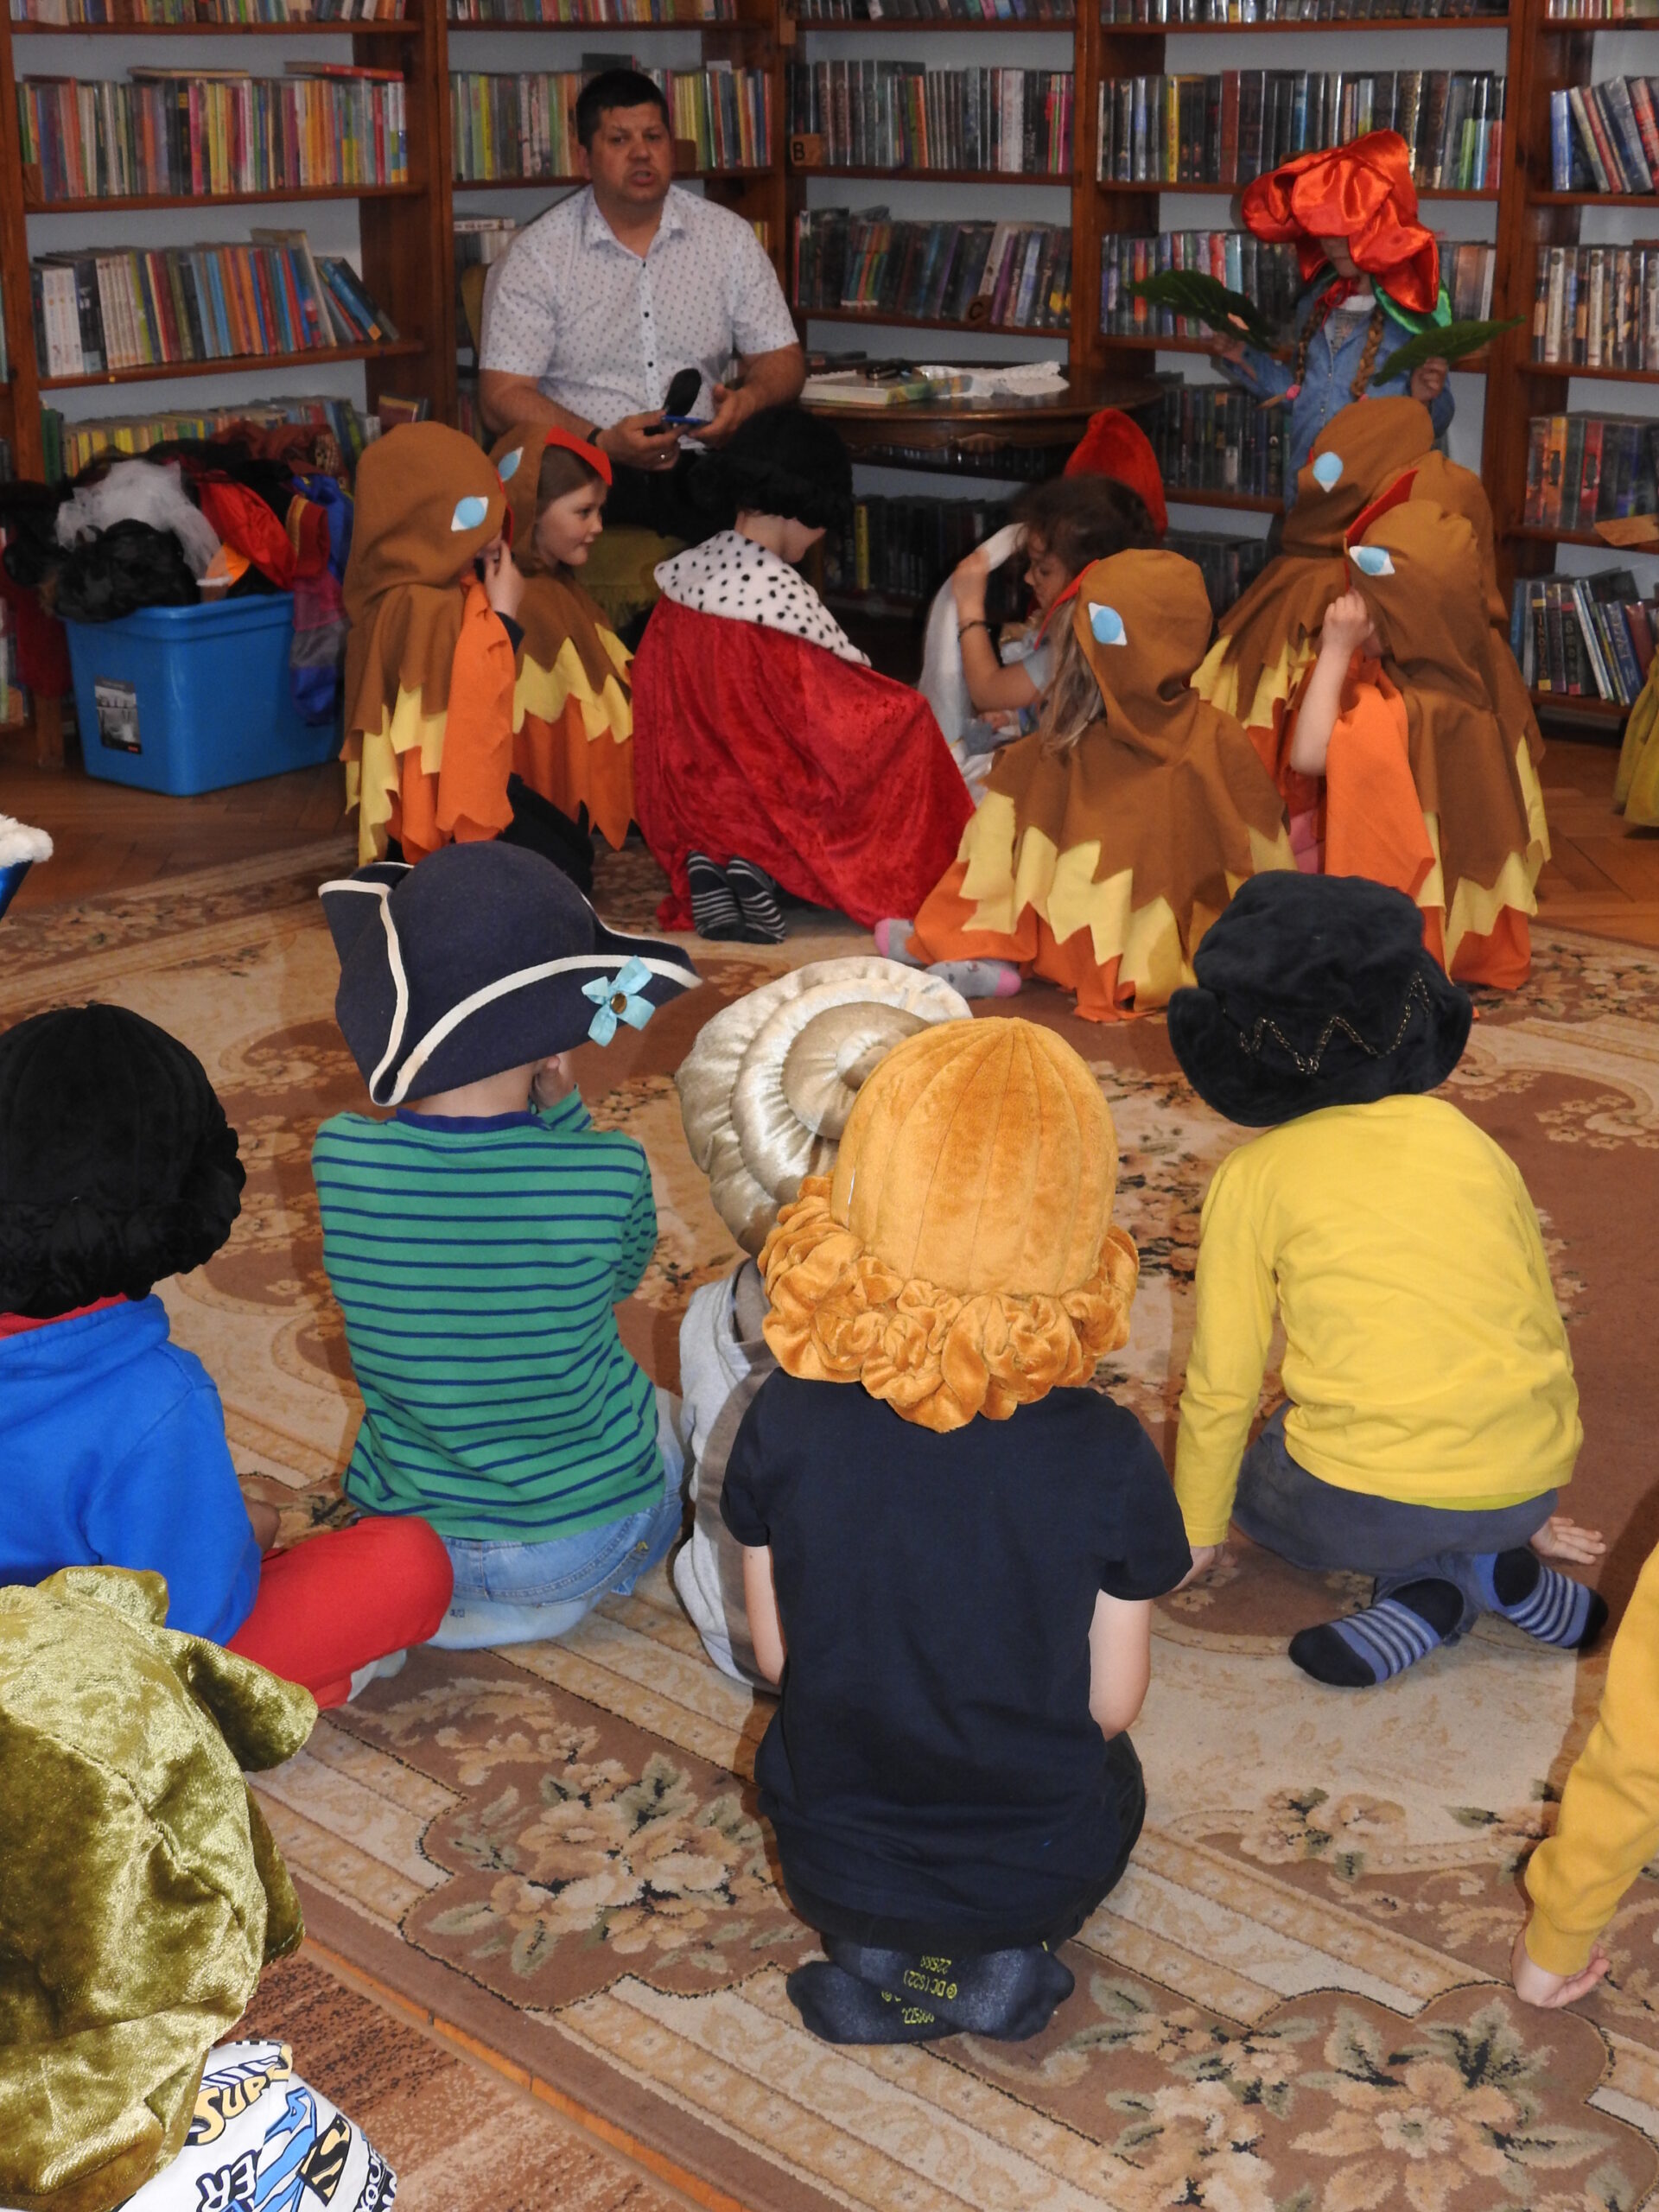 Grupa dzieci ubrana w kostiumy siedzi na dywanie. Jest skierowana w stronę mężczyzny siedzącego na fotelu. W tle regały z książkami.